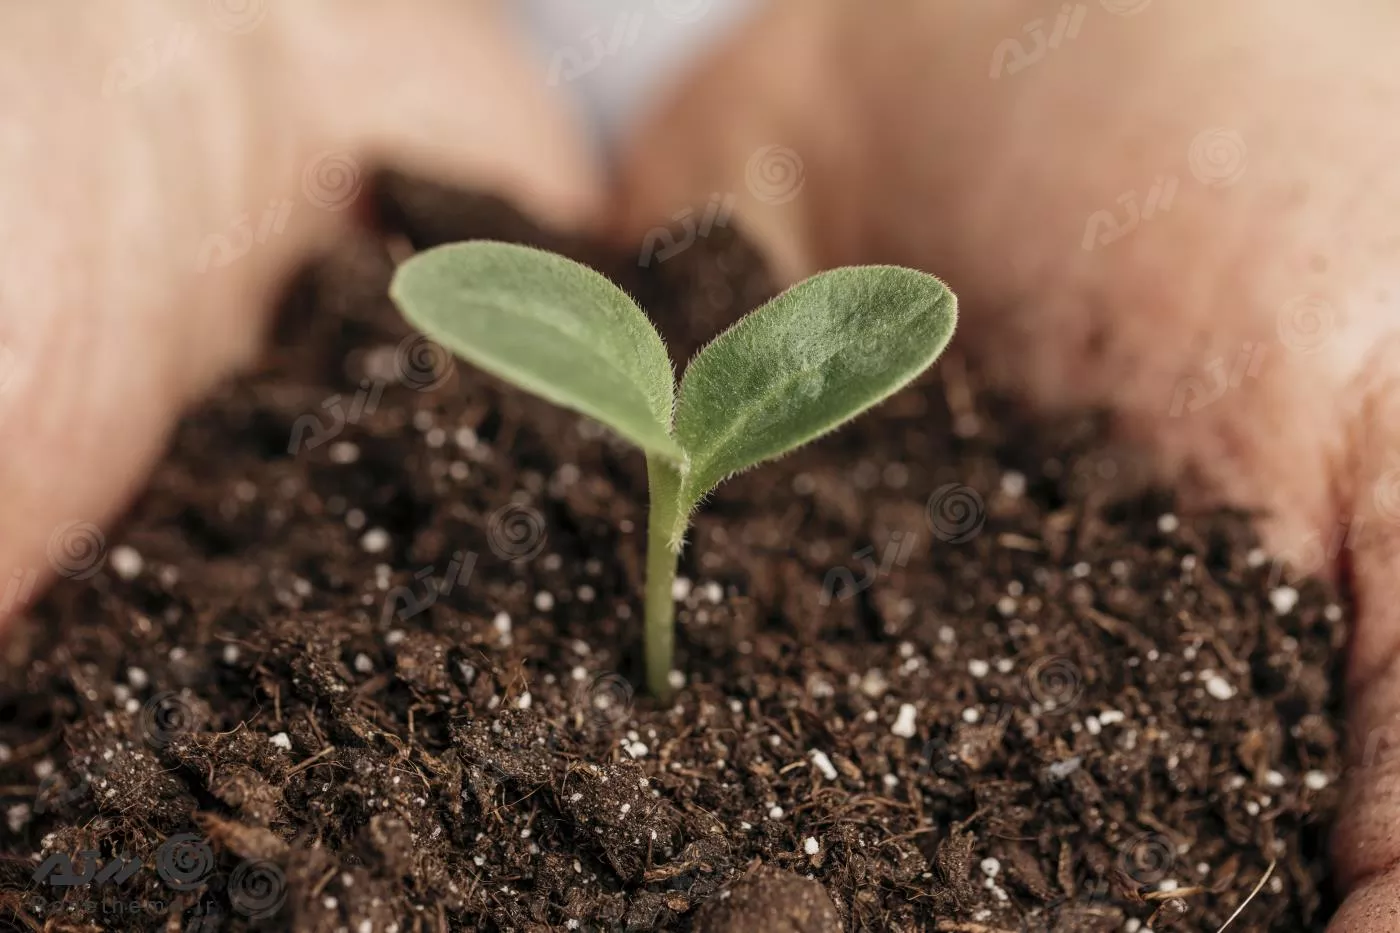 عکس باکیفیت از نمای نزدیک از دستان یک مرد که خاک و گیاه را در دست گرفته اند 22087